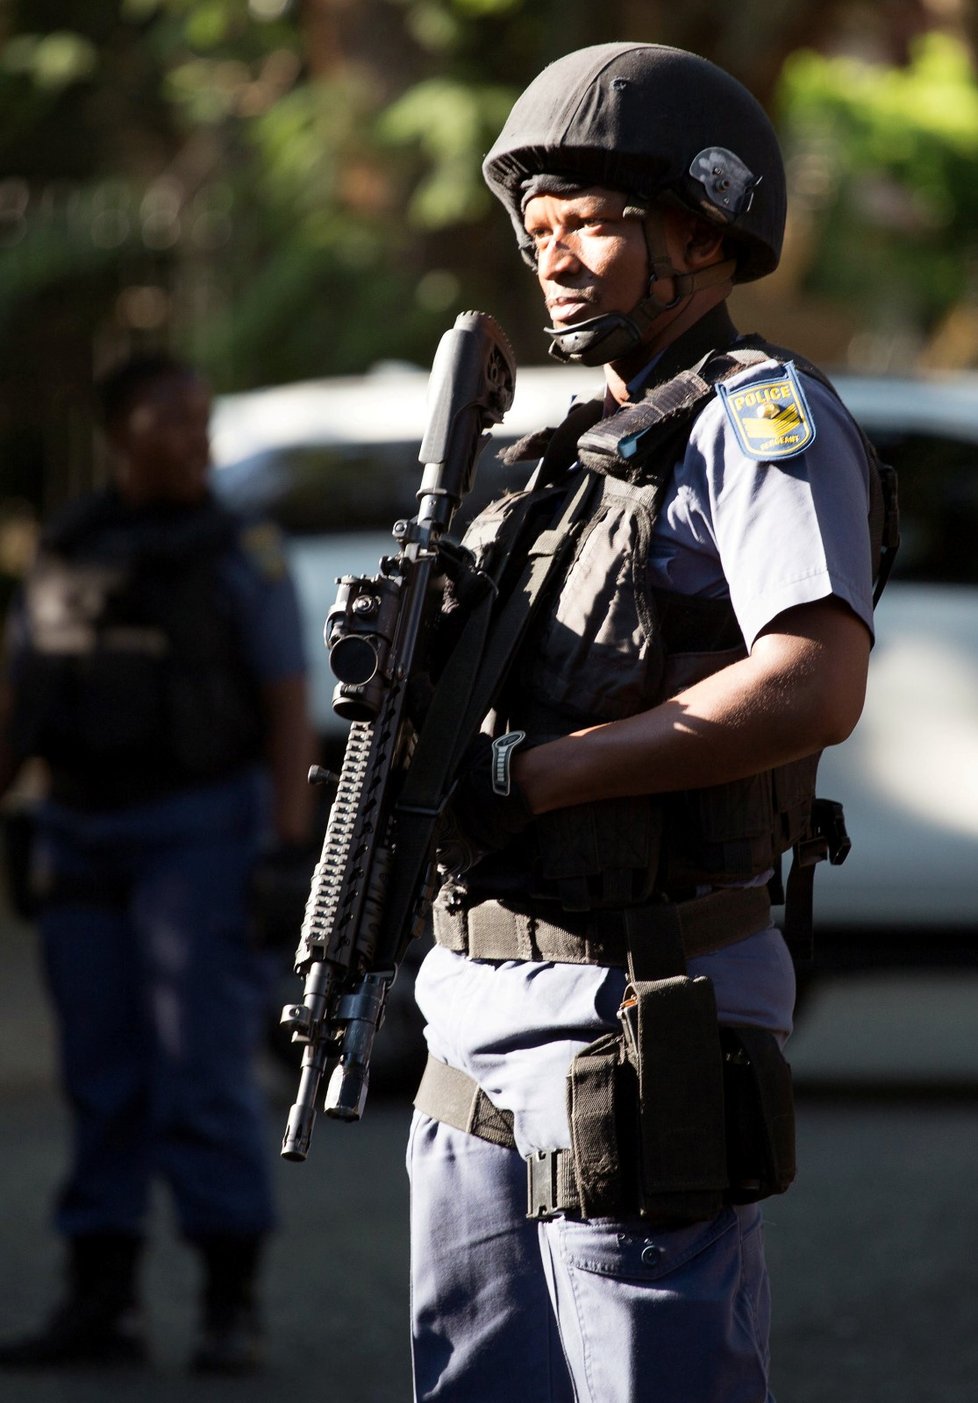 Policie před domem blízkých prezidenta Jihoafrické republiky Jacoba Zumy